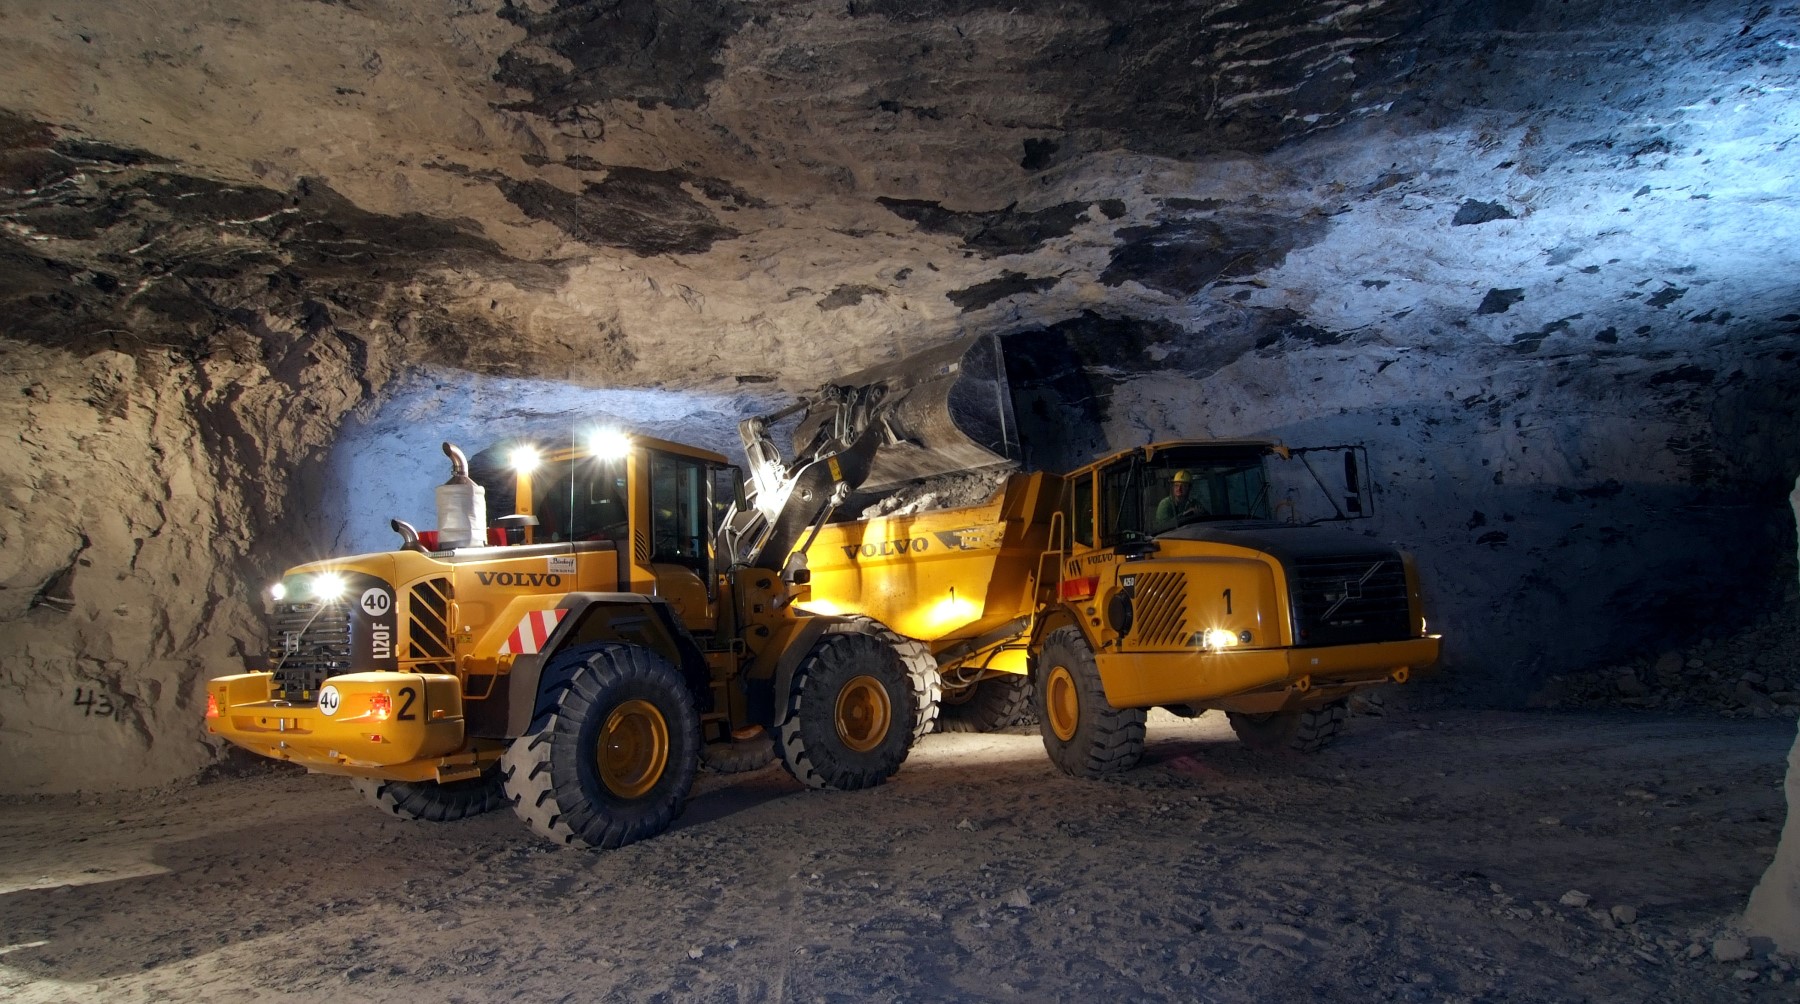 Seit 1847 wird in Obrigheim/Neckar Gips abgebaut. Die Grube ist mittlerweile die größte und älteste Untertagegipsgrube in Deutschland.